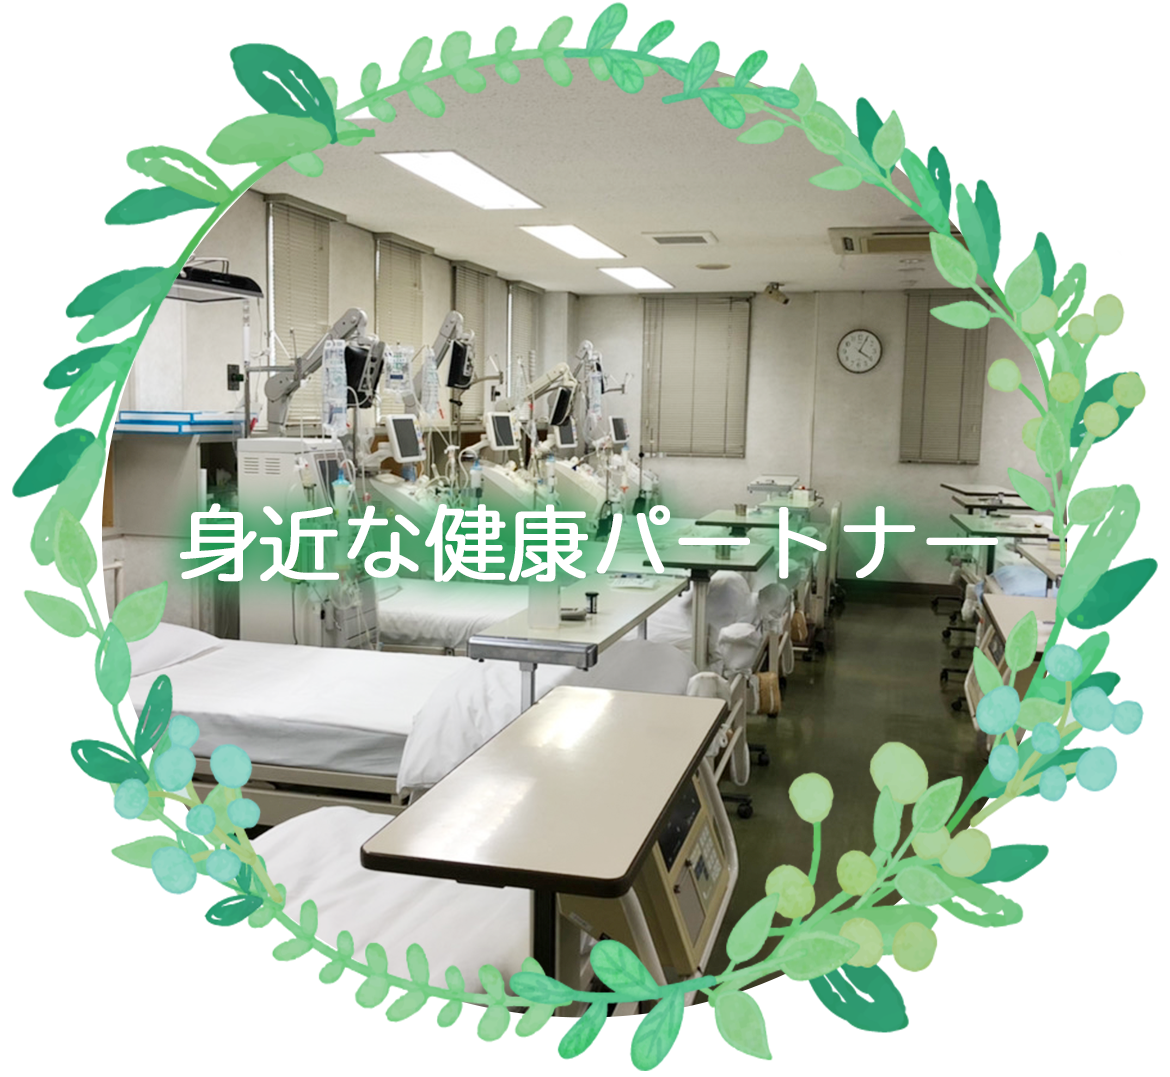 医療法人広志会 齊藤内科医院の内観